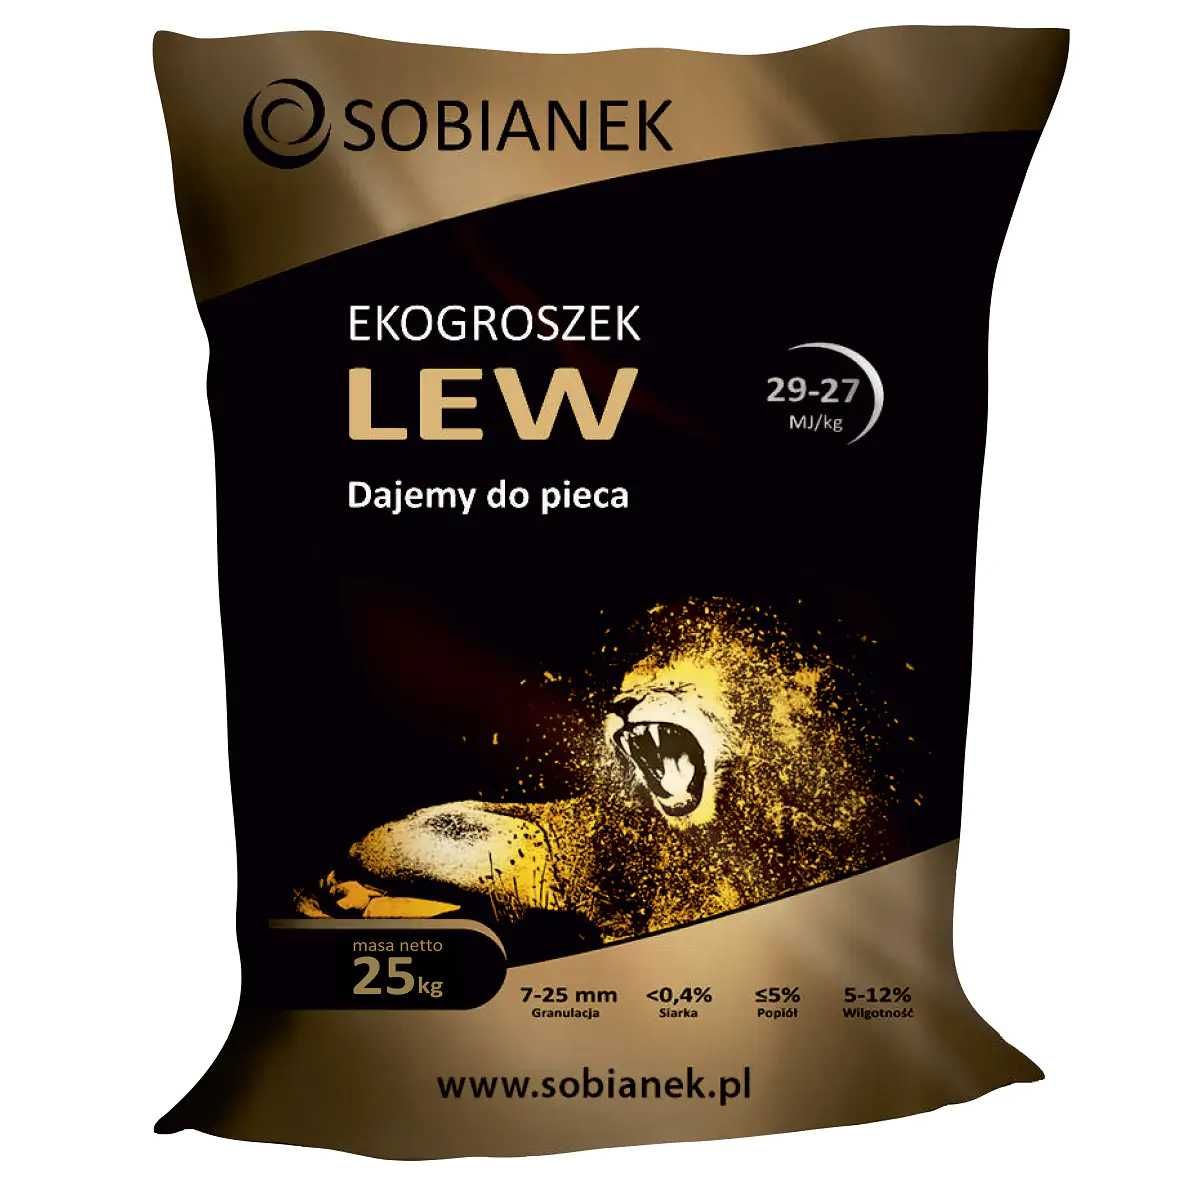 Ekogroszek workowany LEW 29-27 MJ/kg